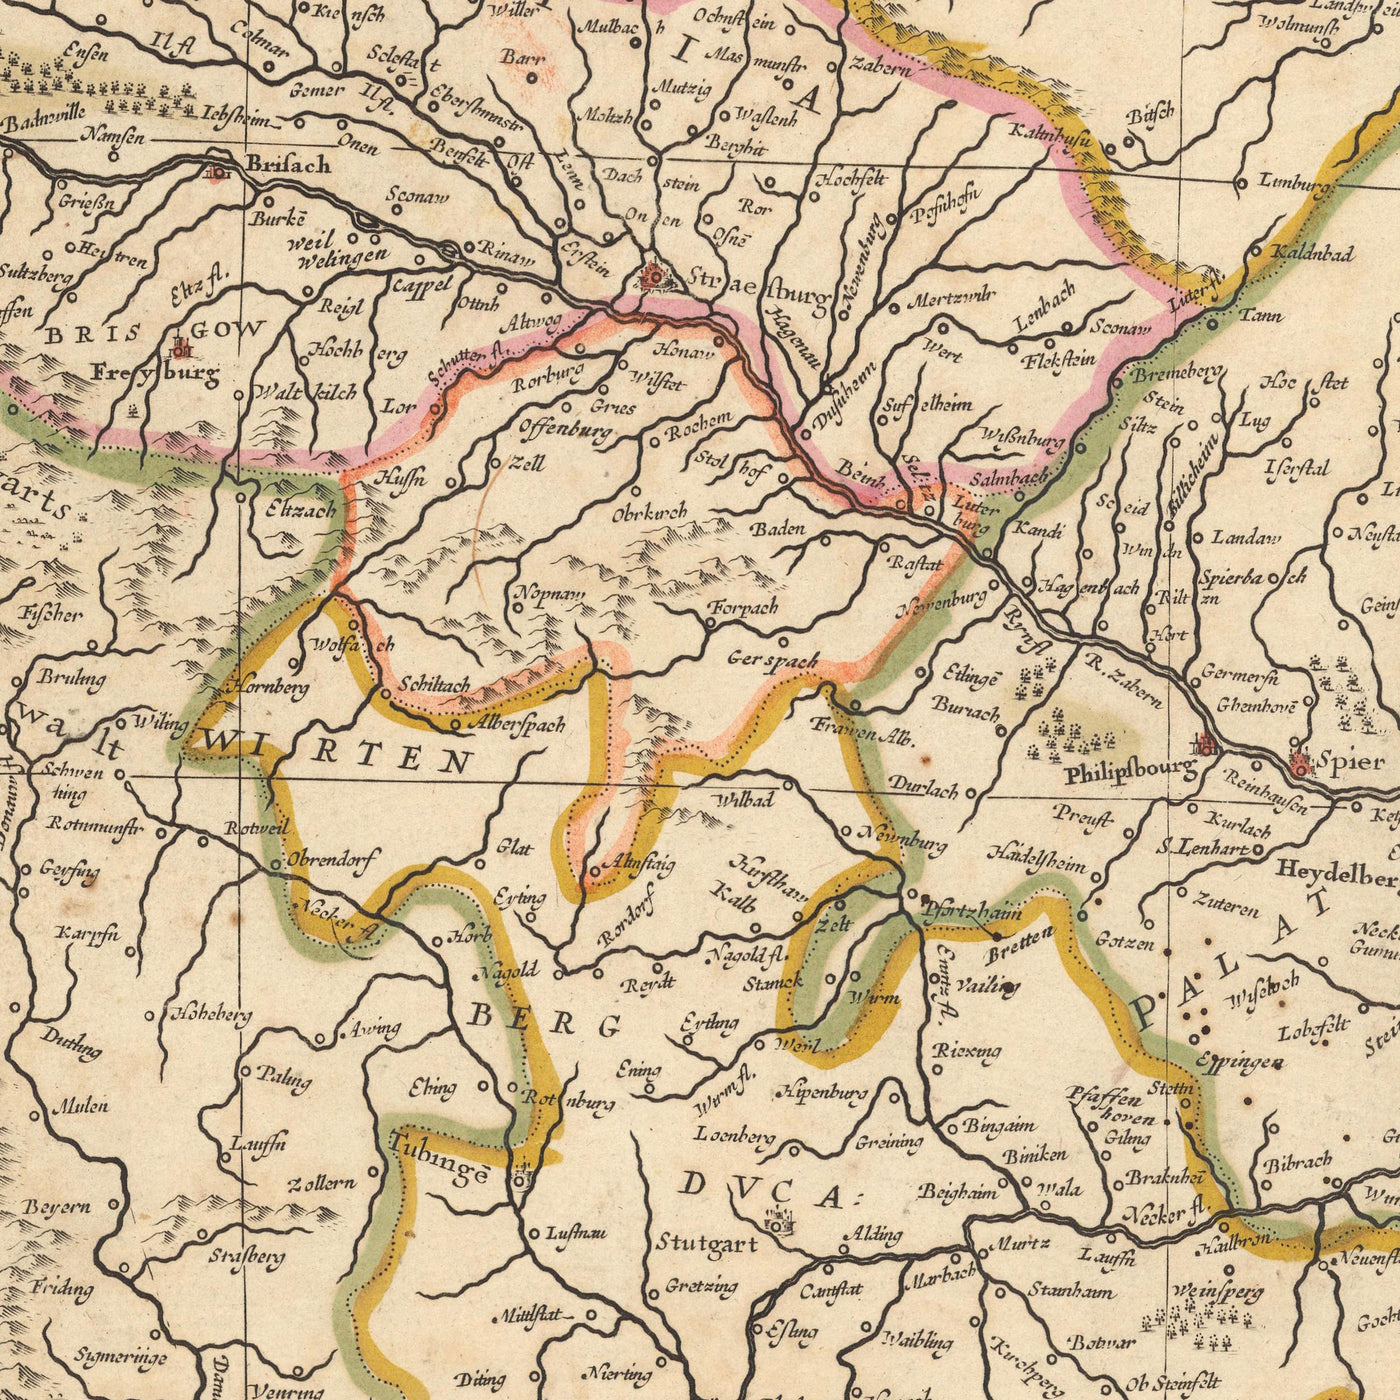 Mapa antiguo del río Rin por Visscher, 1690: desembocadura a la fuente, Berna, Bruselas, Luxemburgo, Frankfurt, Colonia